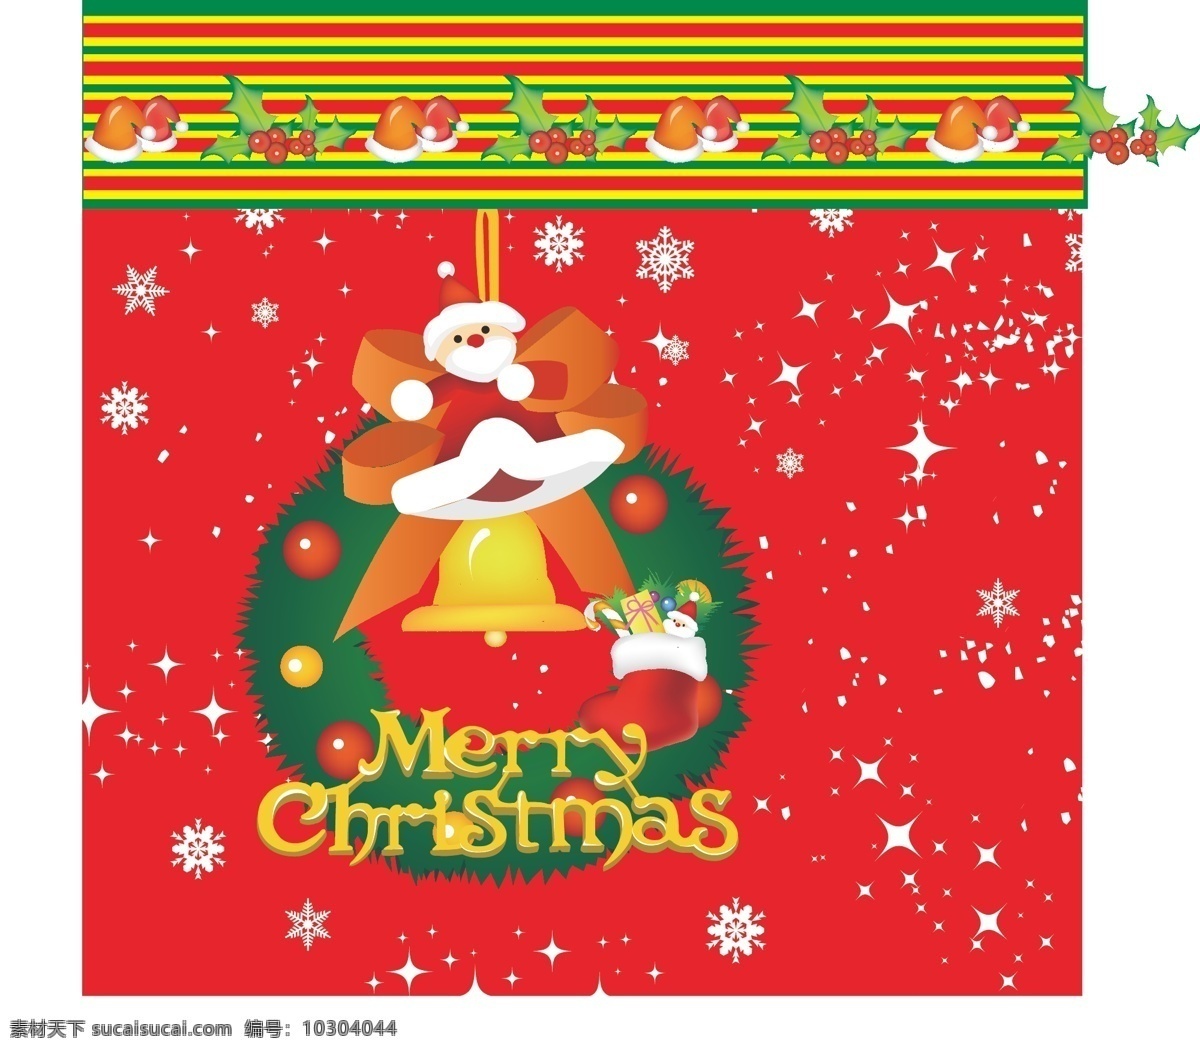 包装设计 风铃 果实 蝴蝶结 礼品 帽子 球 色条 圣诞老人 条纹 星星 礼品袋 矢量 模板下载 圣诞 雪花 圣诞圈 靴子 叶子 各种 精美 手提袋 矢量图 日常生活